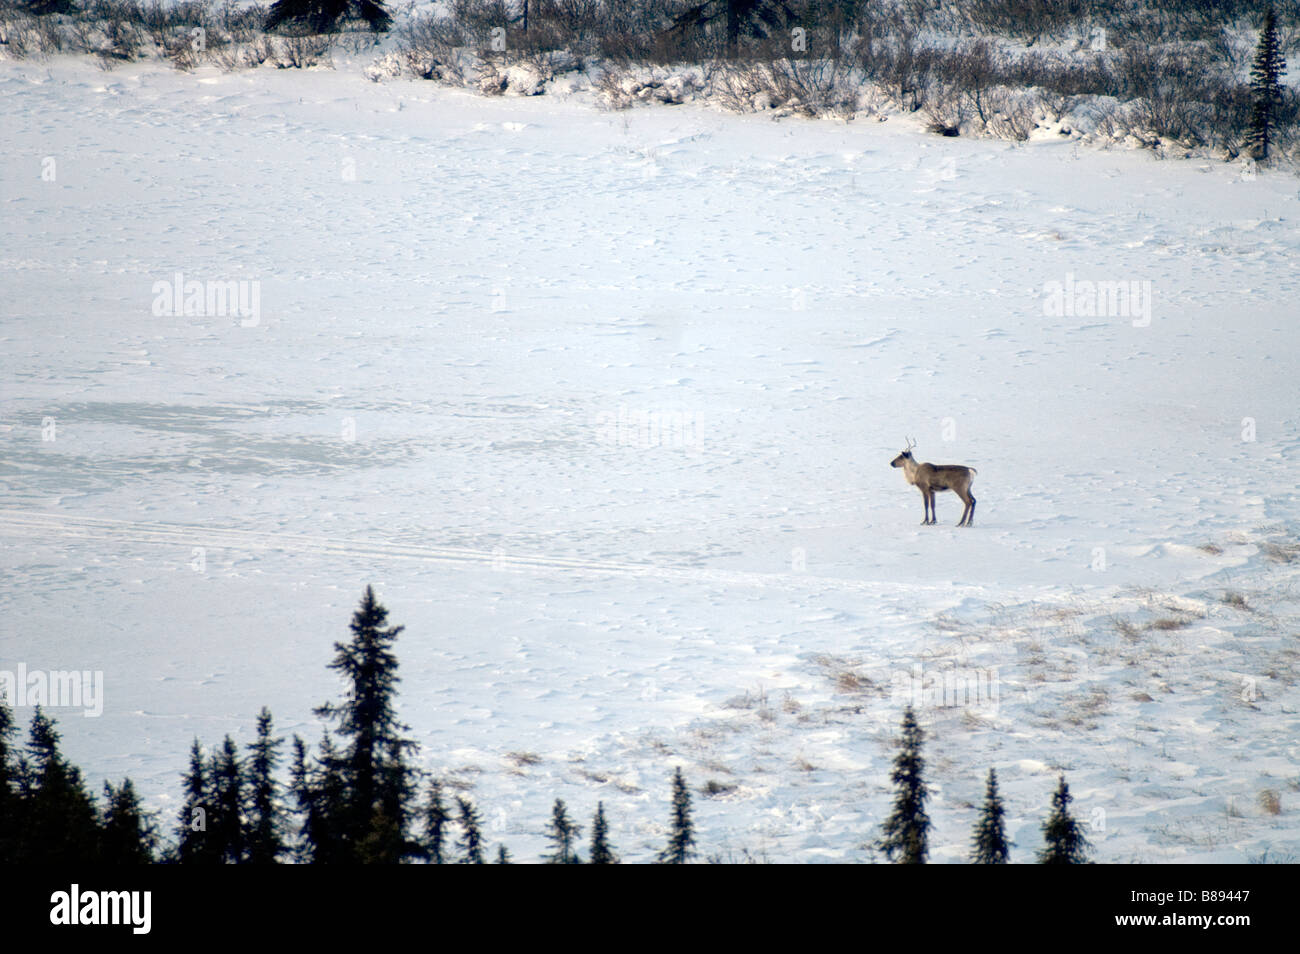 Le caribou traverse la route en avant du véhicule Denali Alaska North America United States Banque D'Images